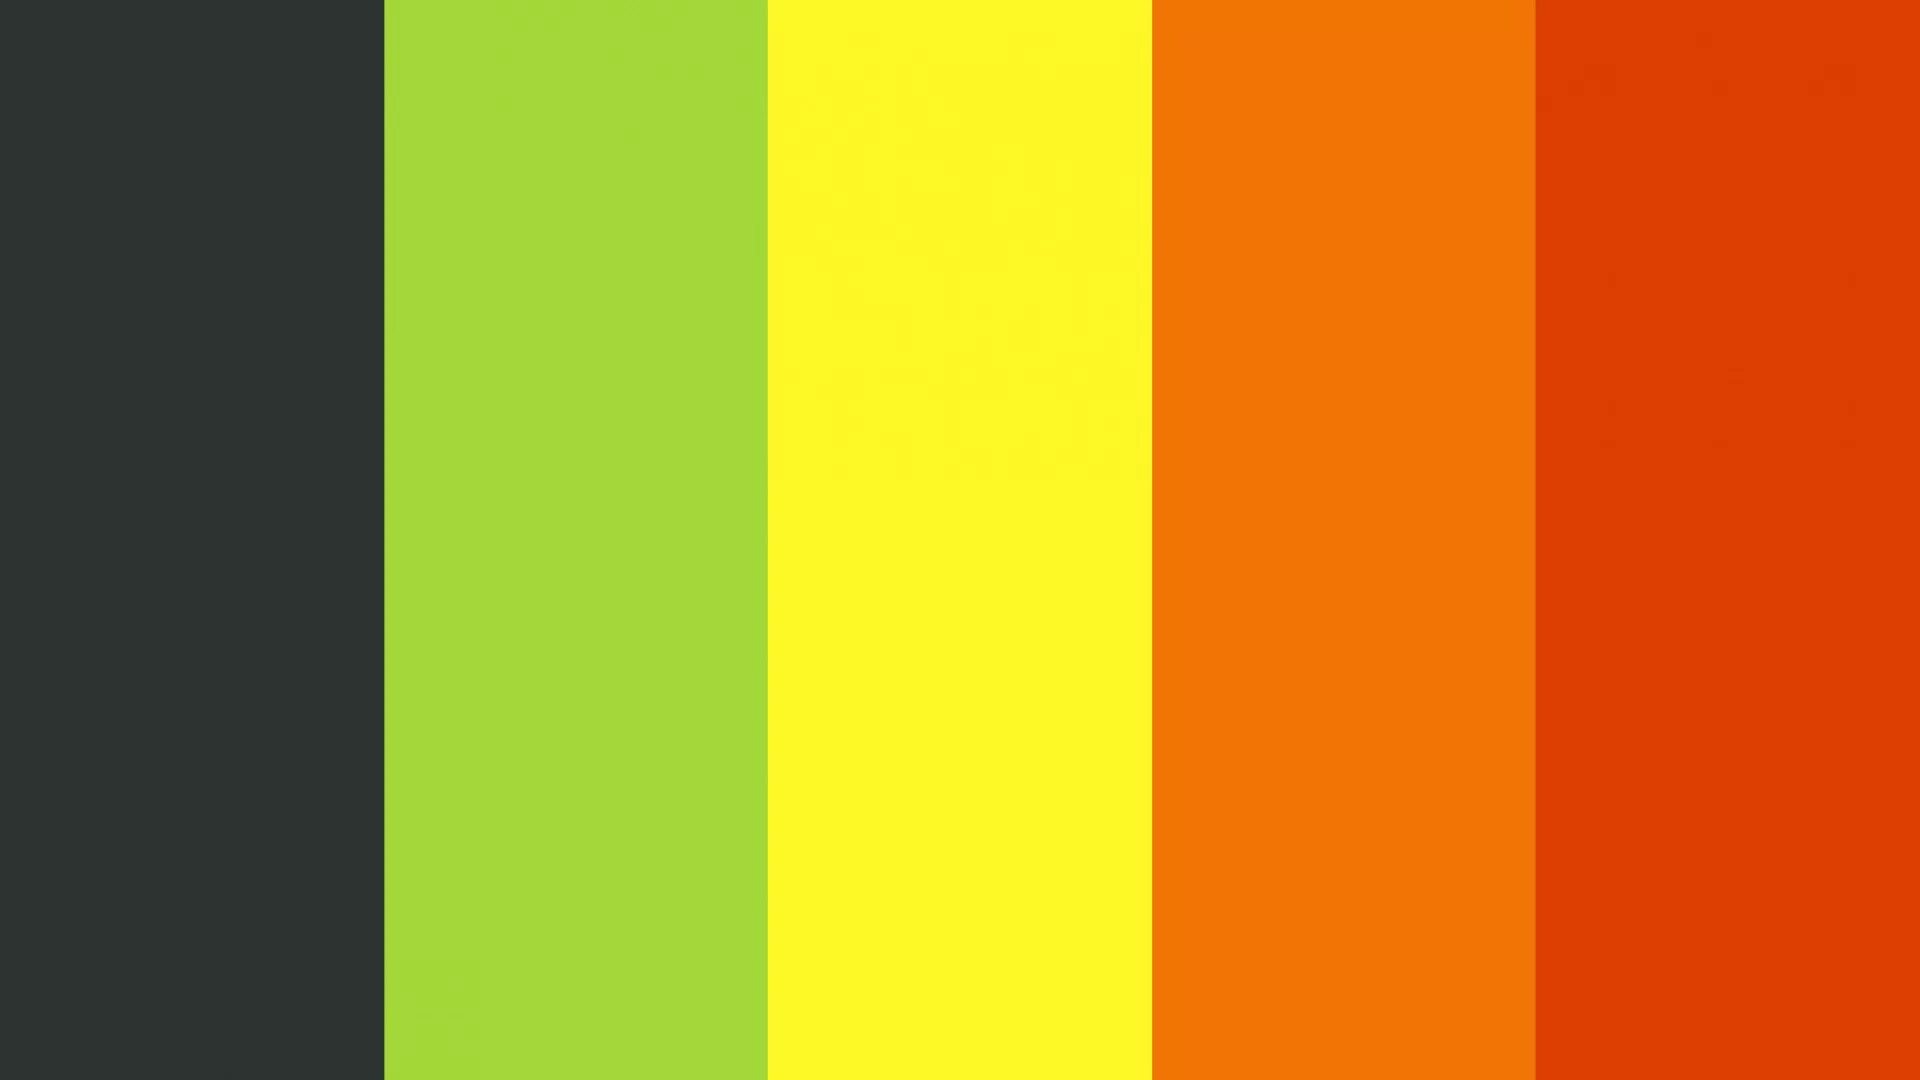 Цвет темный желтовато зеленый. Зеленый/оранжевый. Желто-зеленый цвет. Цветовая палитра оранжевый зеленый. Палитра желтый оранжевый зеленый.